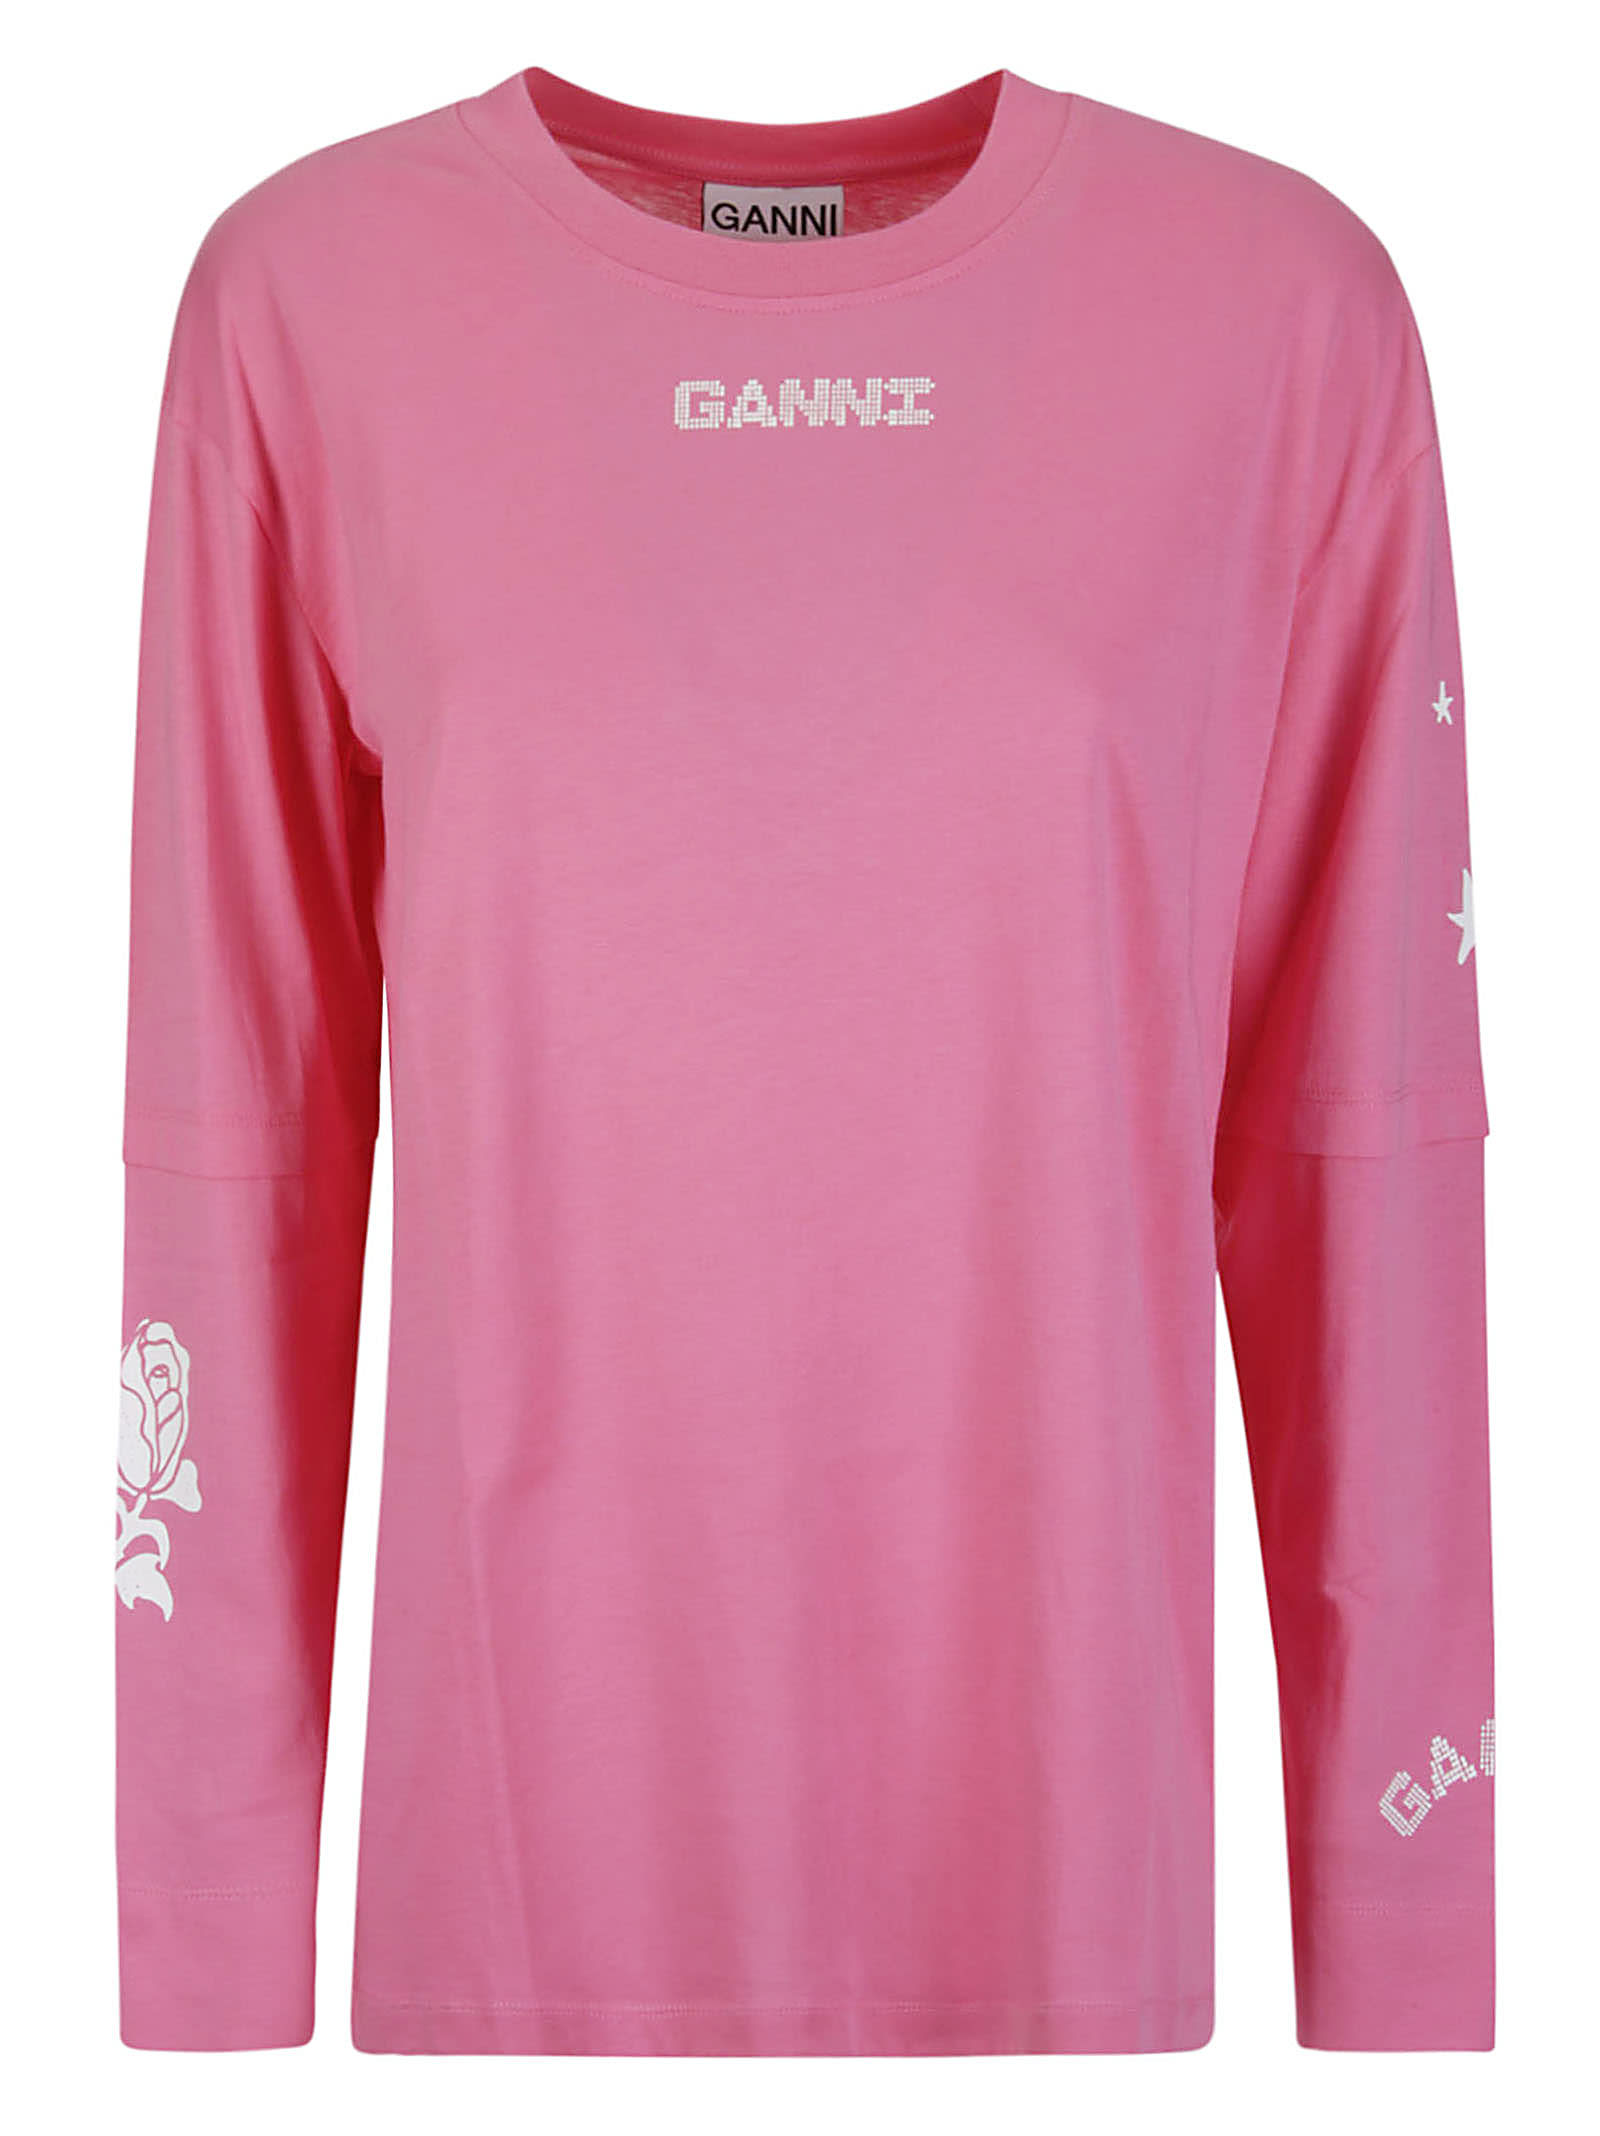 Ganni Light Jersey Layered Long Sleeve T-shirt